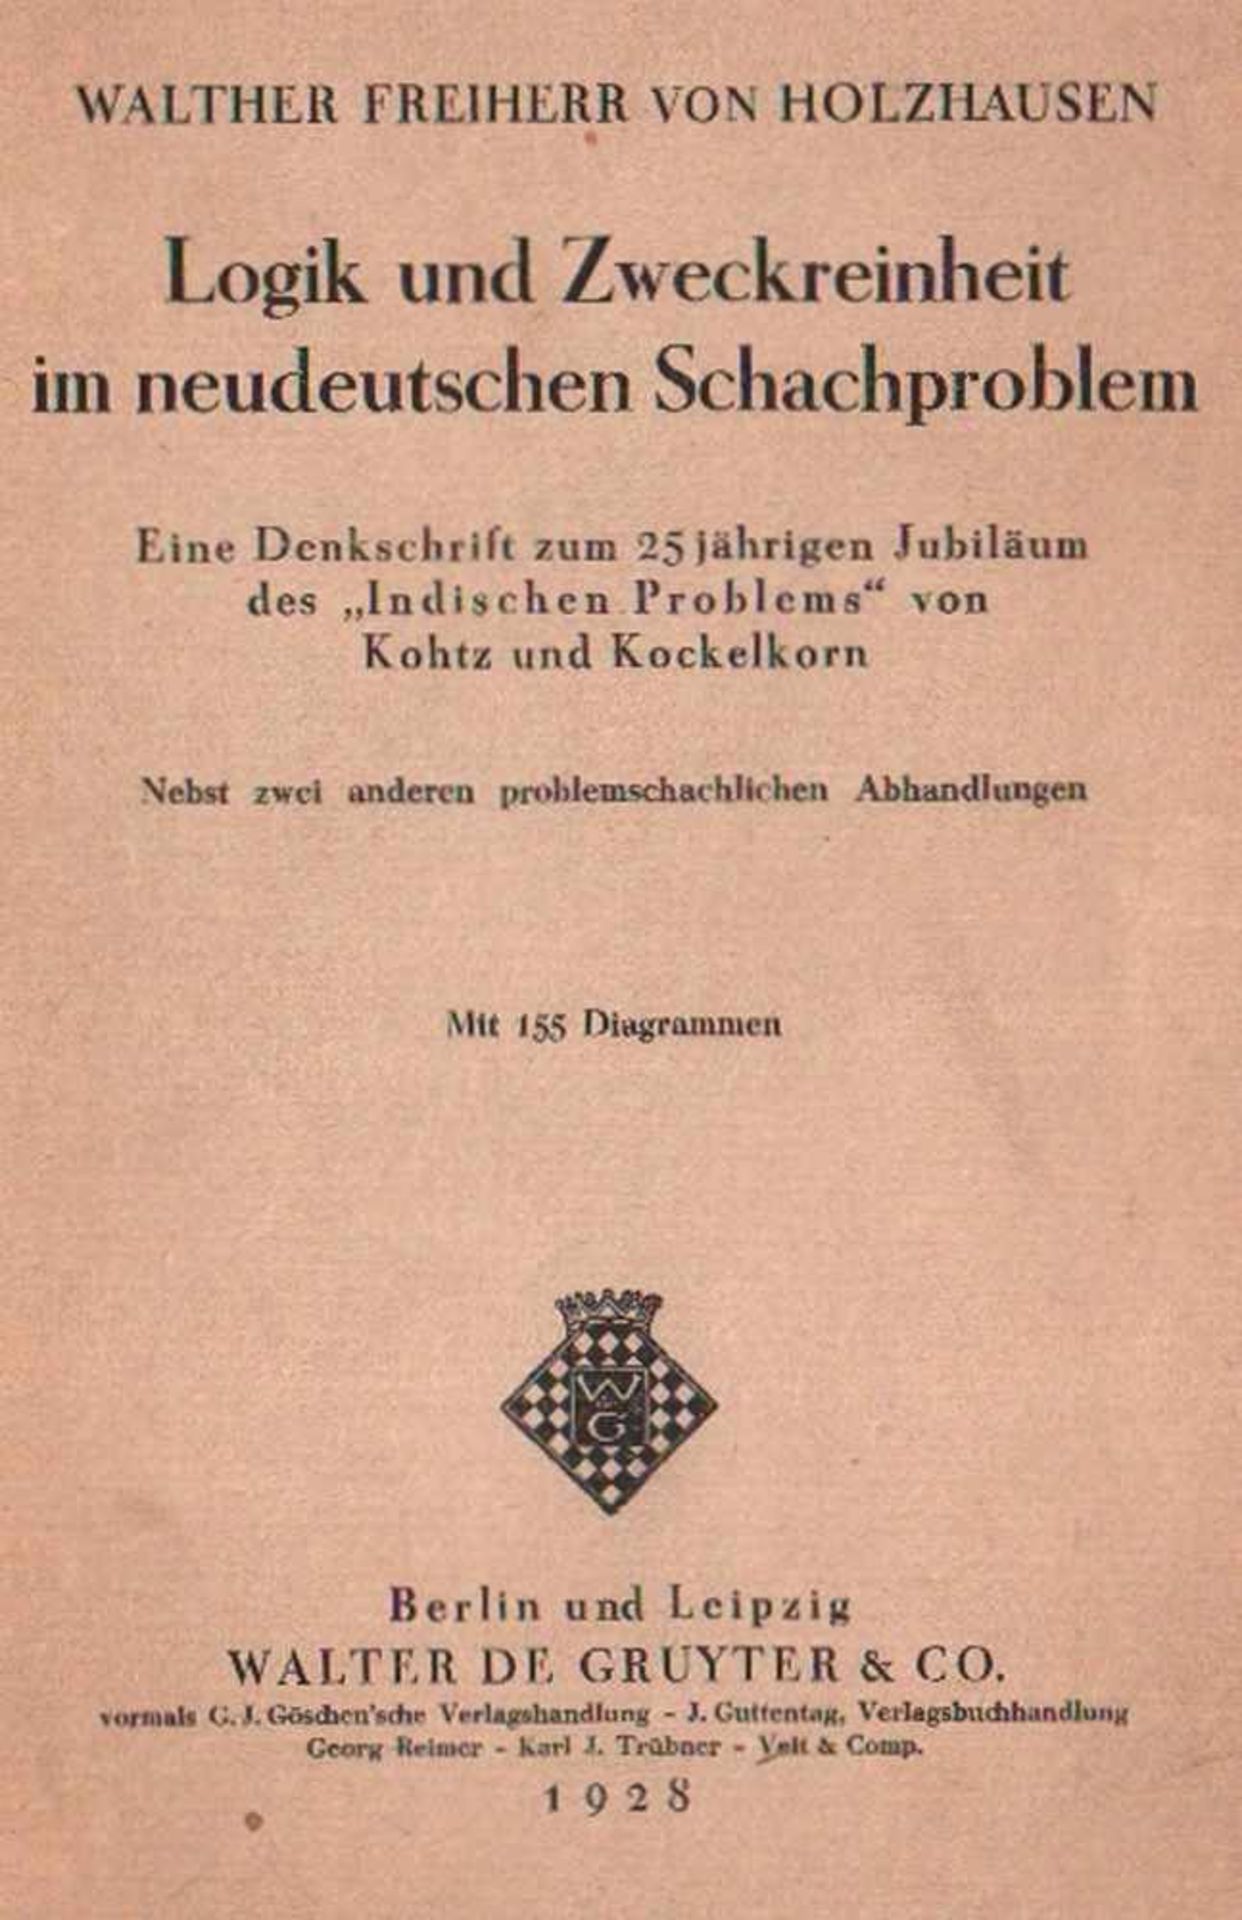 Holzhausen, Walther v. Logik und Zweckreinheit im neudeutschen Schachproblem. Eine Denkschrift zum